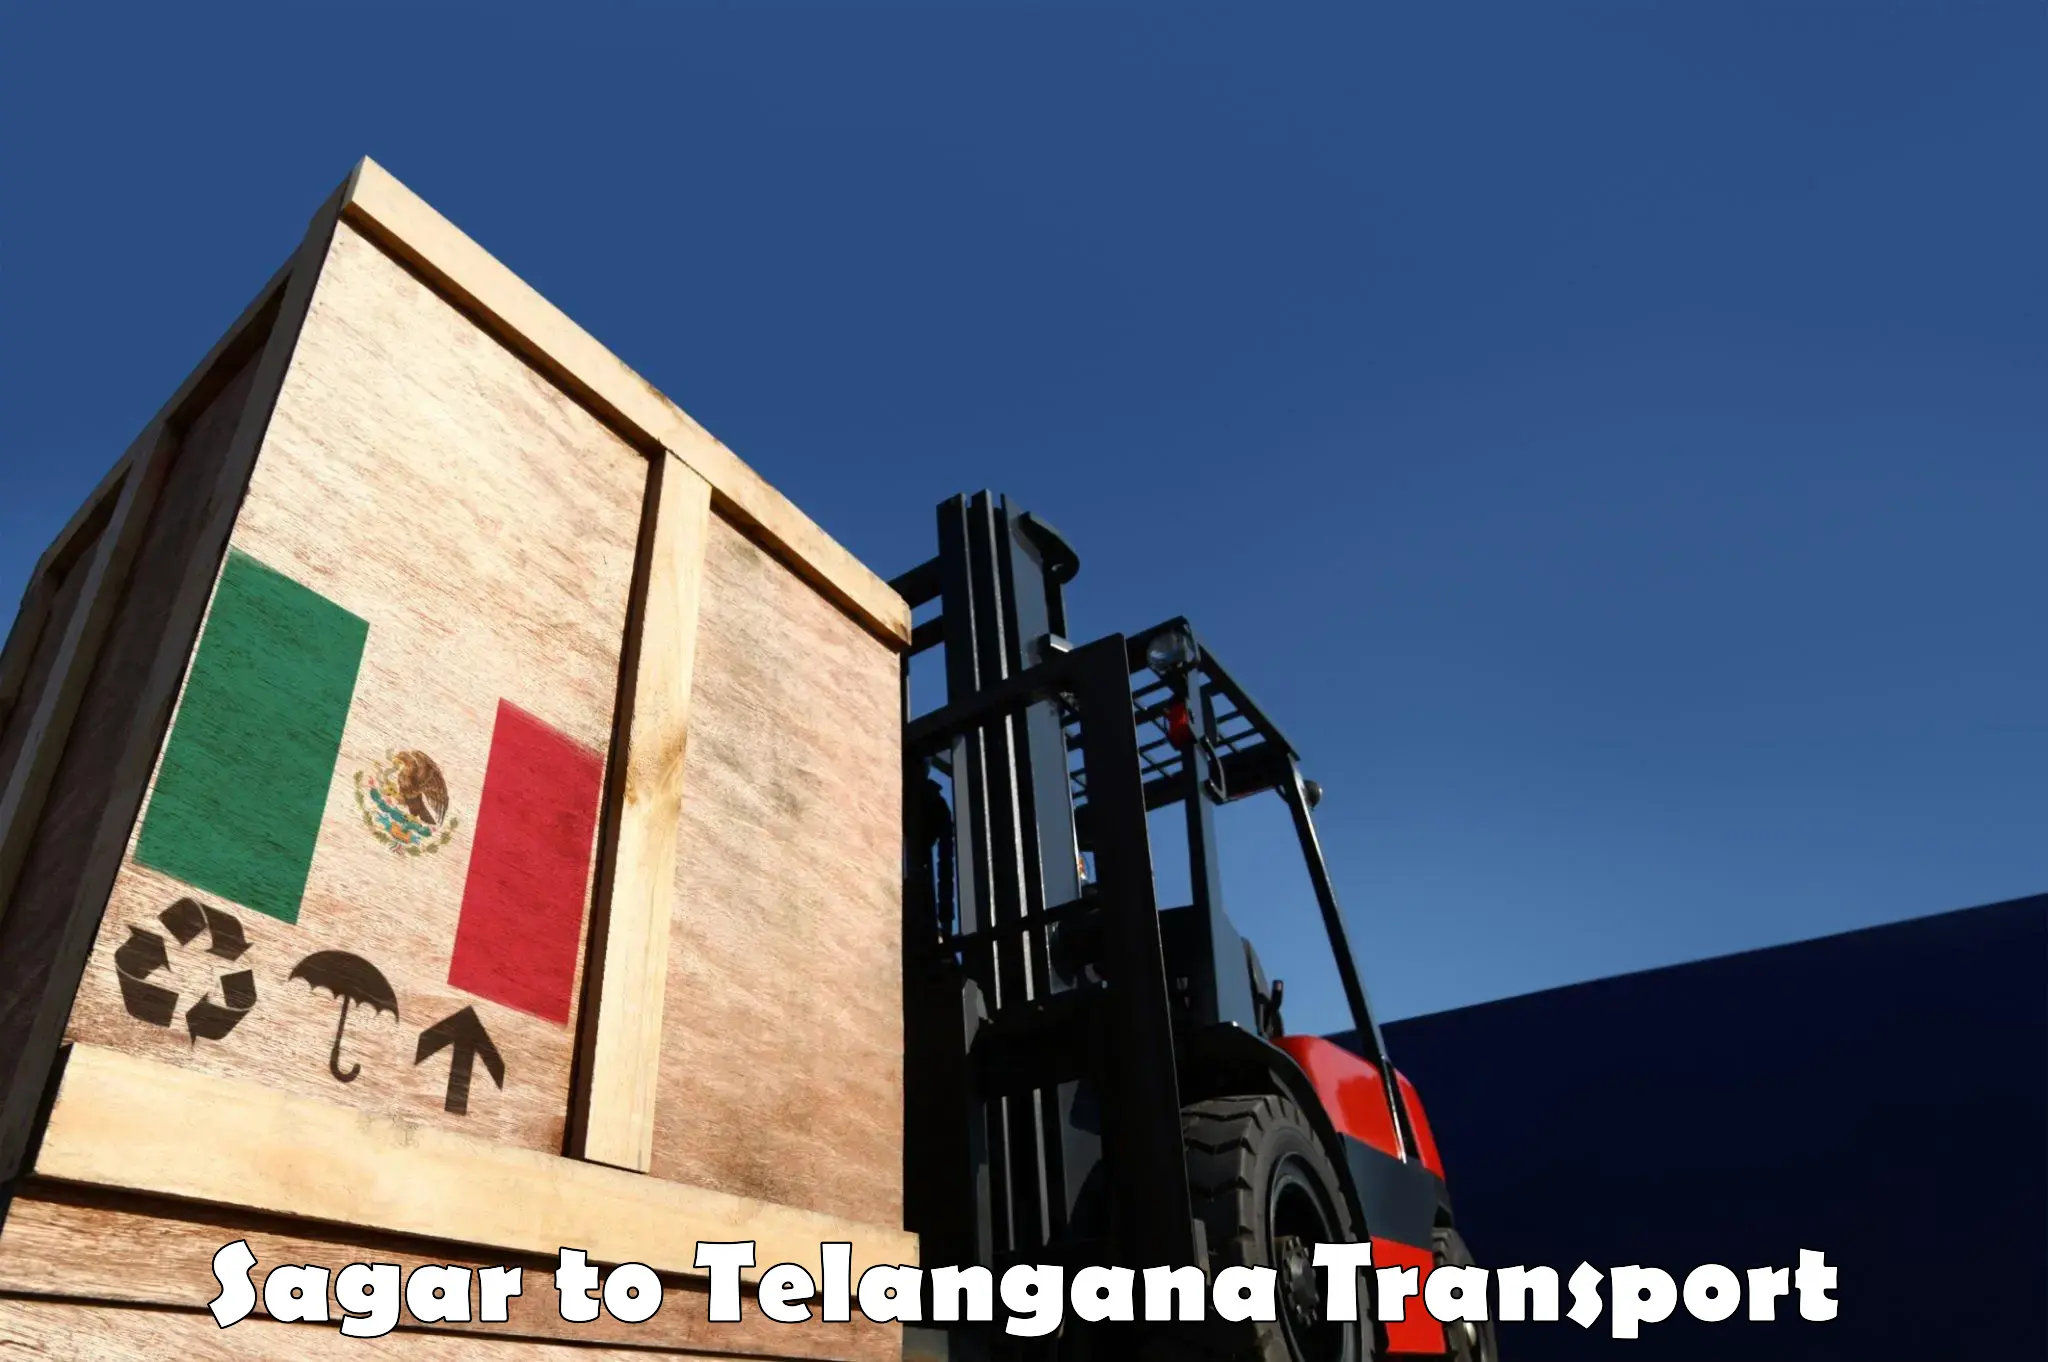 Luggage transport services in Sagar to Thirumalagiri